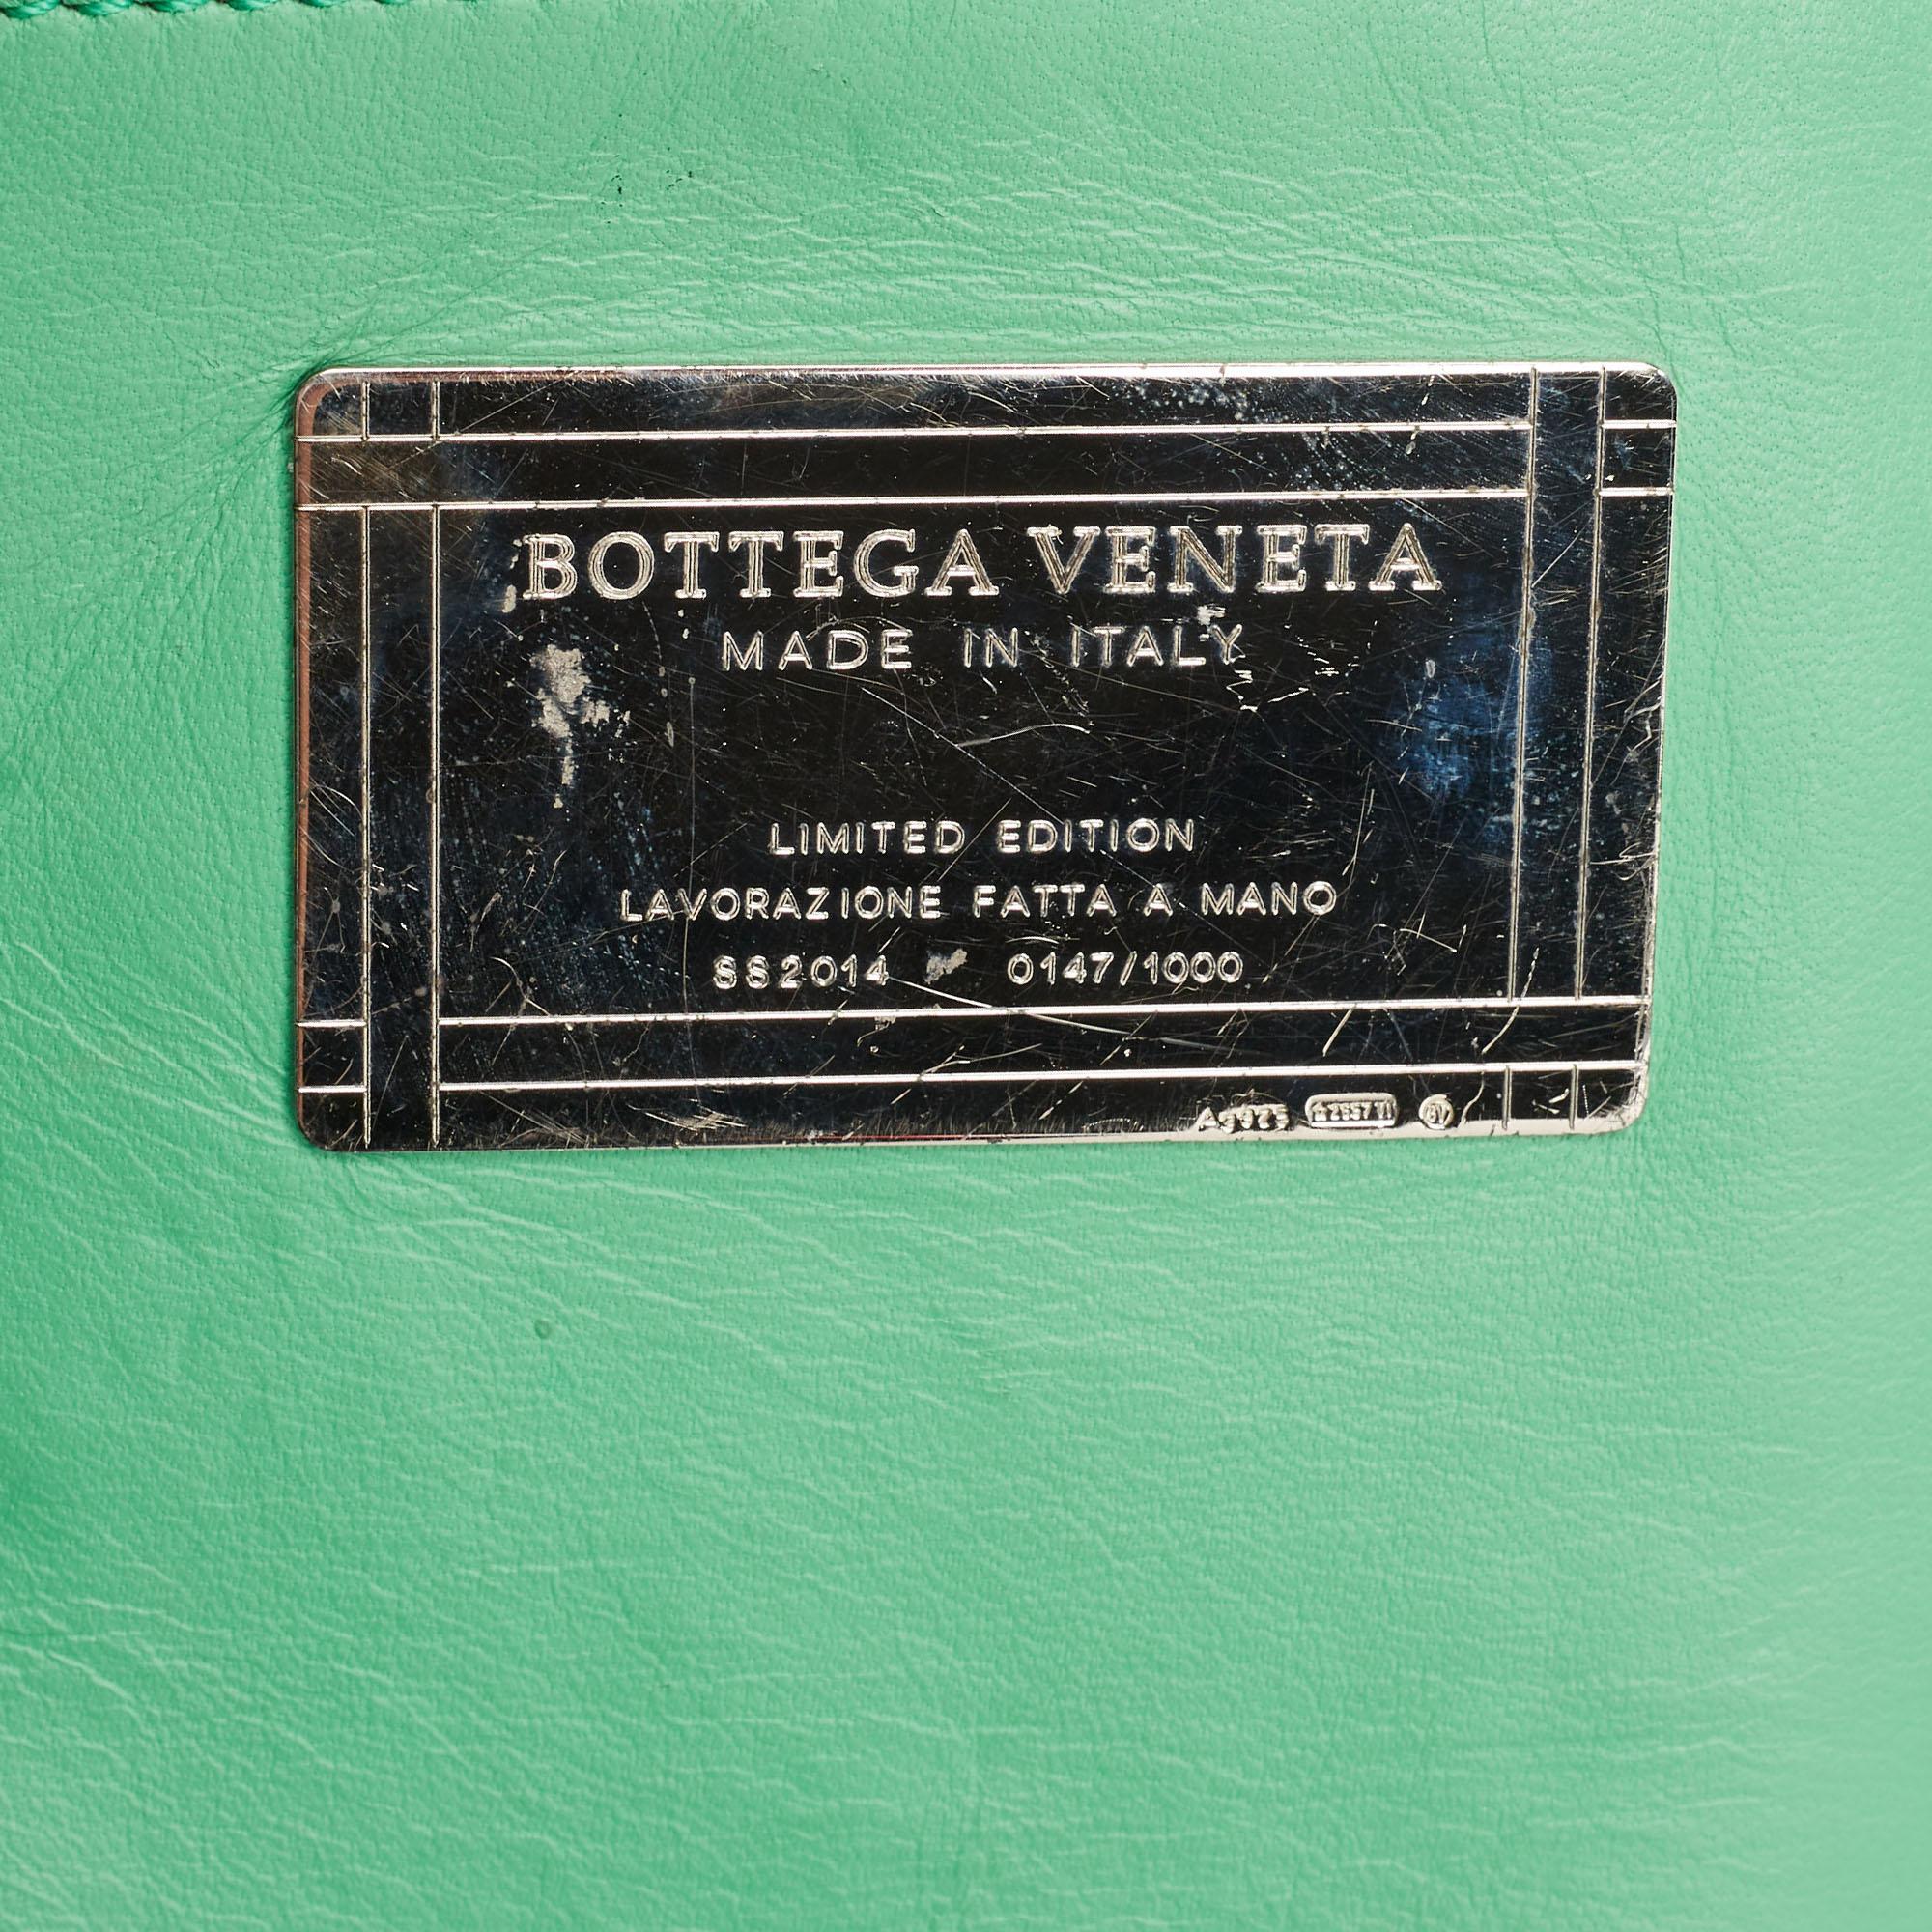 Bottega Veneta Green Intrecciato Leather  Limited Edition 0147/1000 Cabat Tote For Sale 7